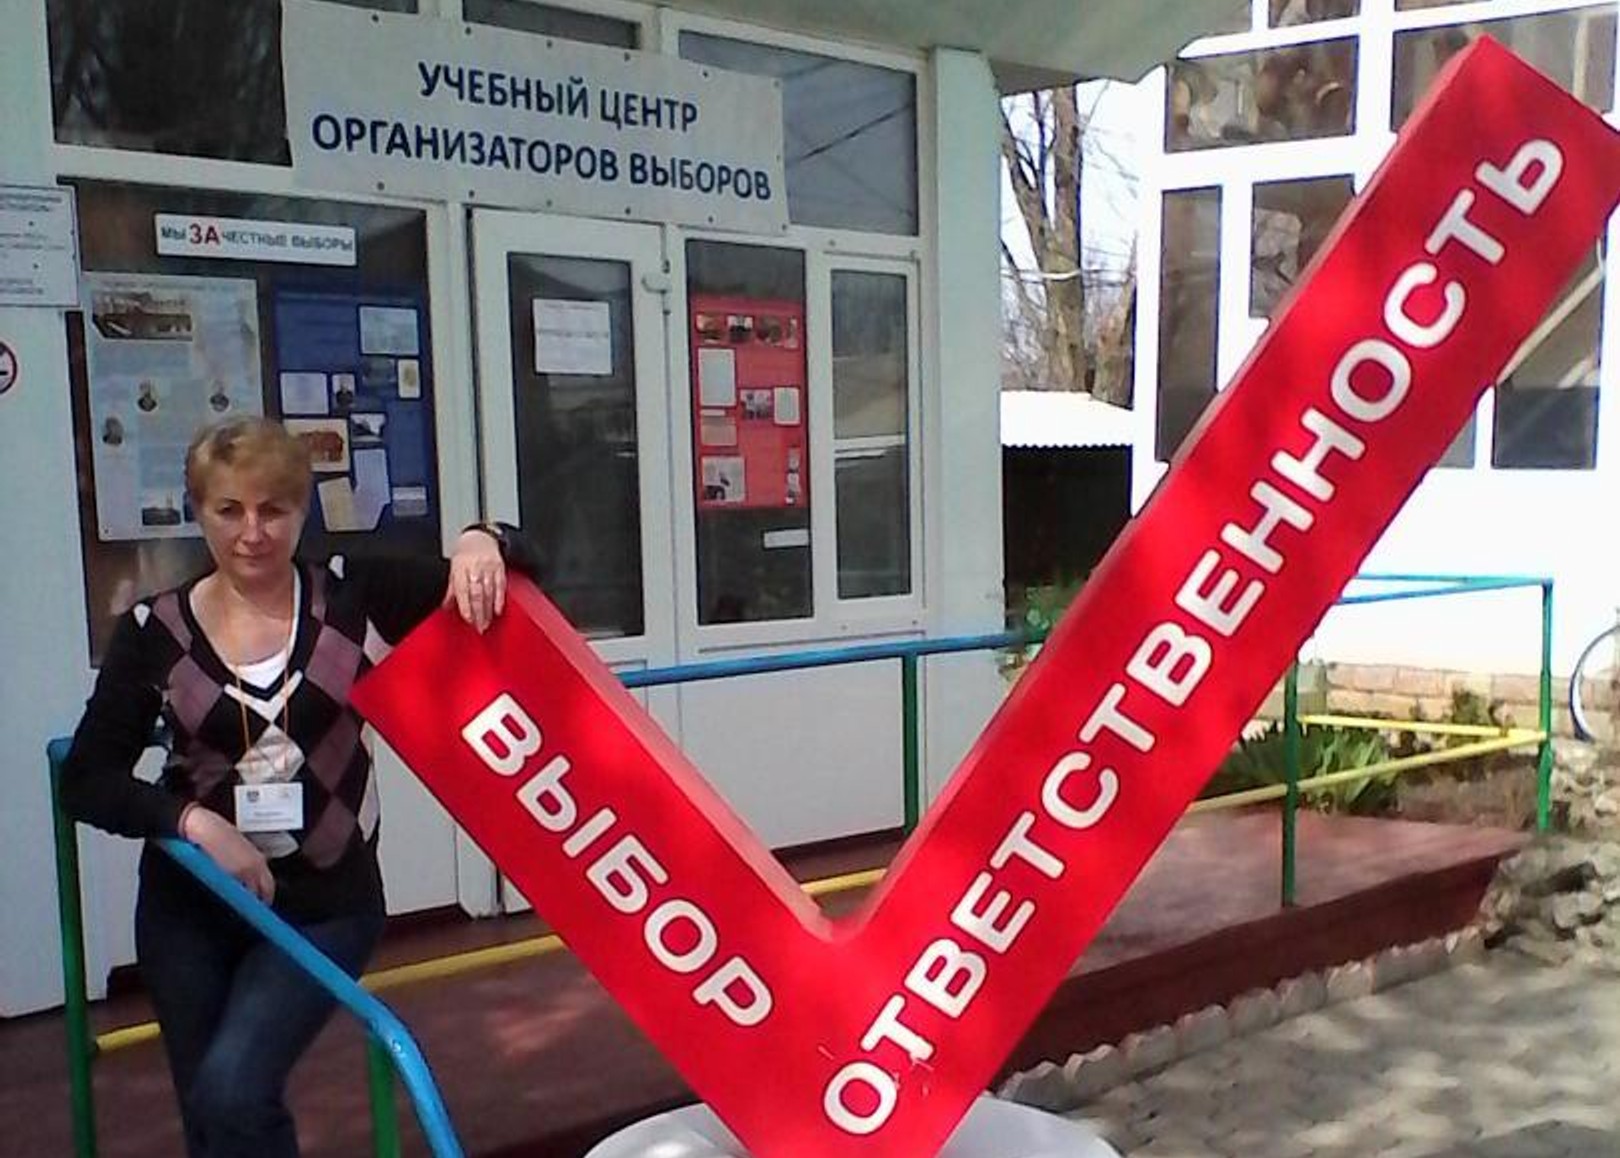 Ростовська вчителька суспільствознавства відбулася штрафом за фальсифікацію виборів